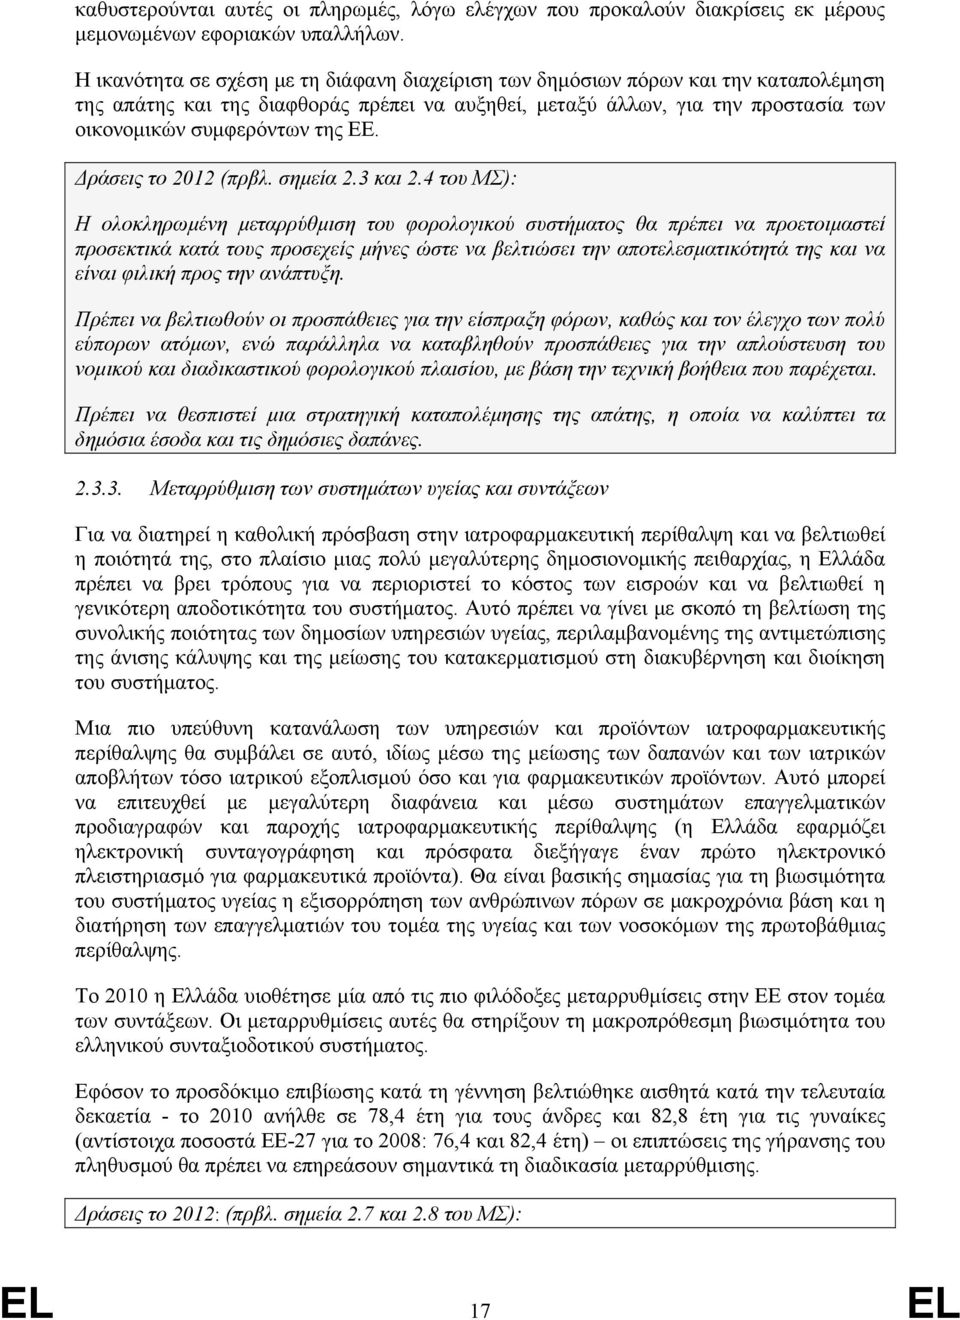 ΕΕ. Δράσεις το 2012 (πρβλ. σημεία 2.3 και 2.